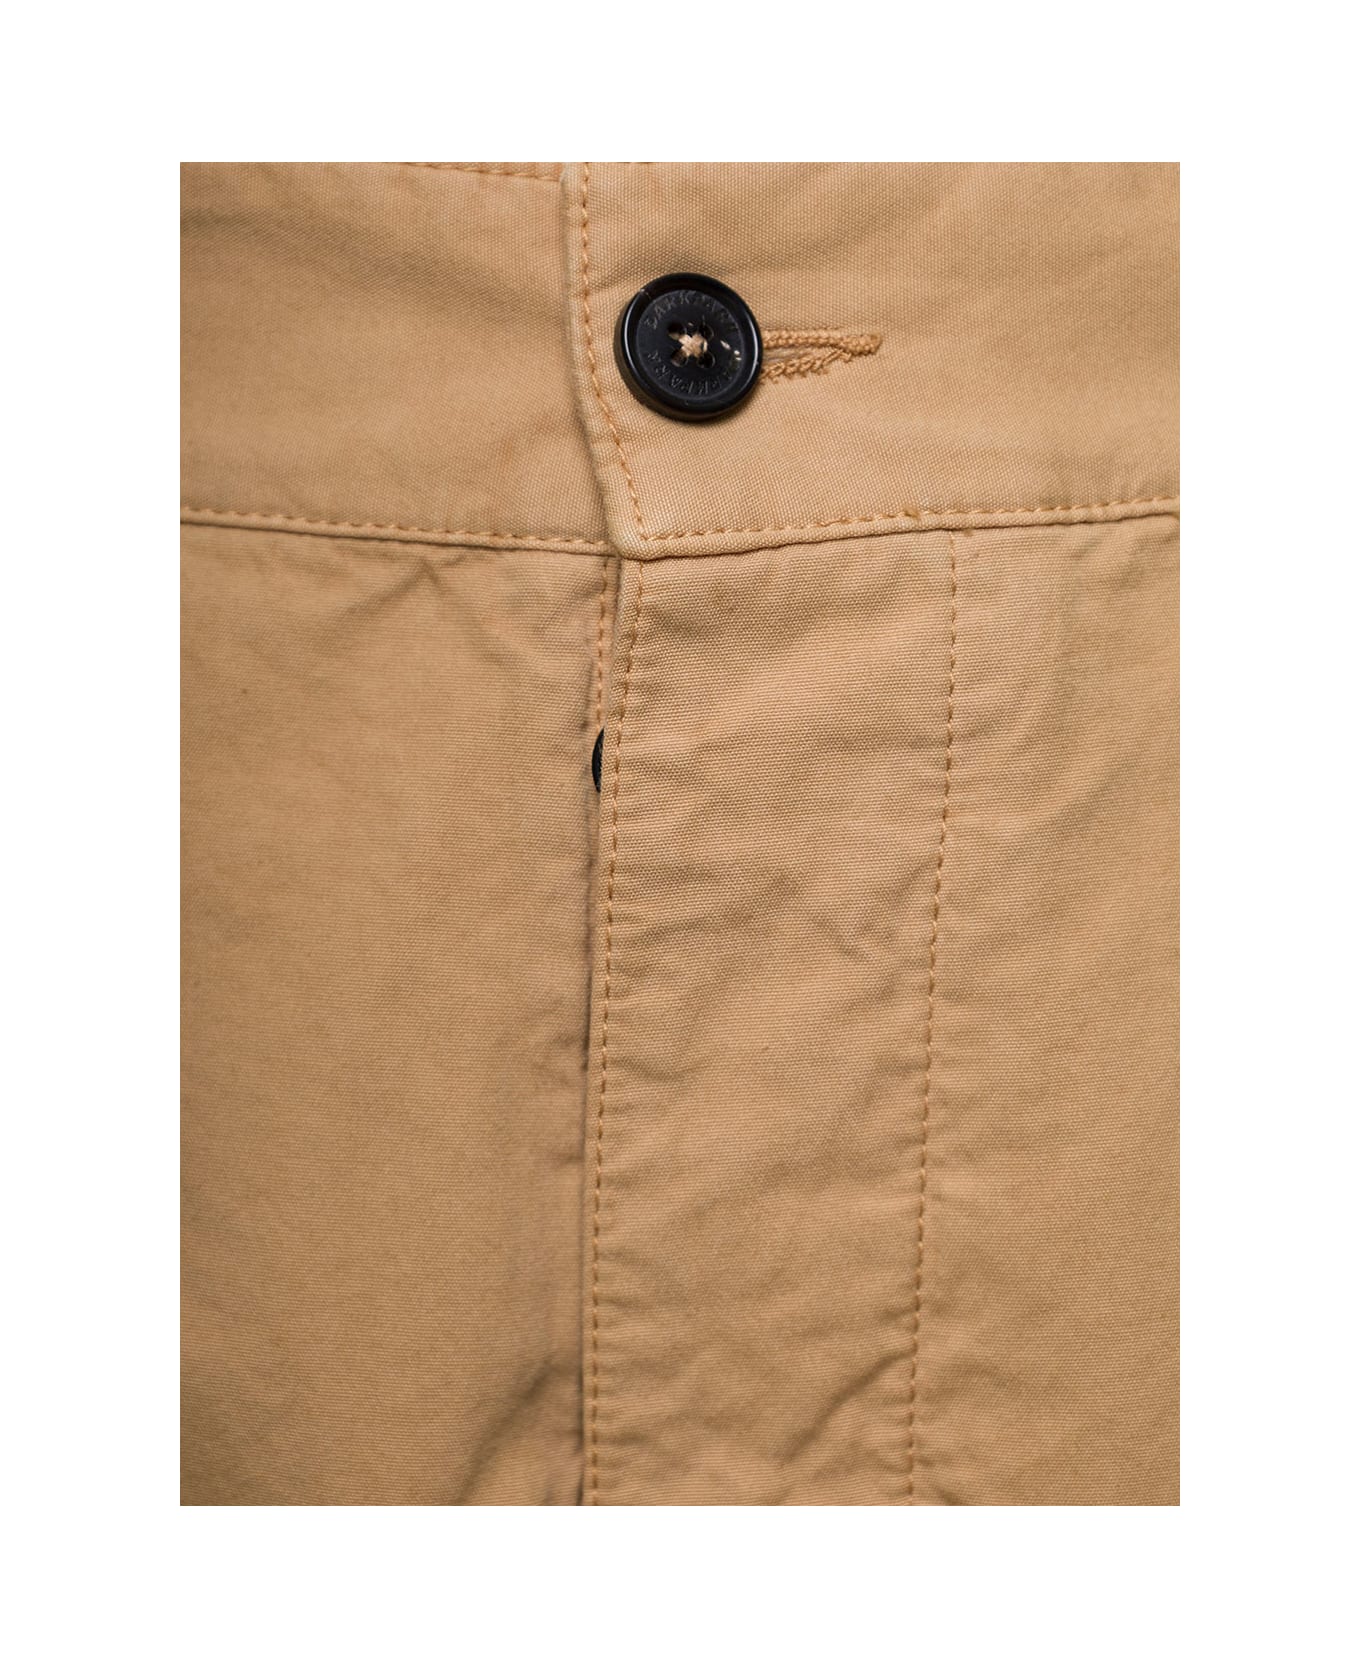 DARKPARK 'saint' Beige Cargo Pants With Pockets In Cotton Man - Beige